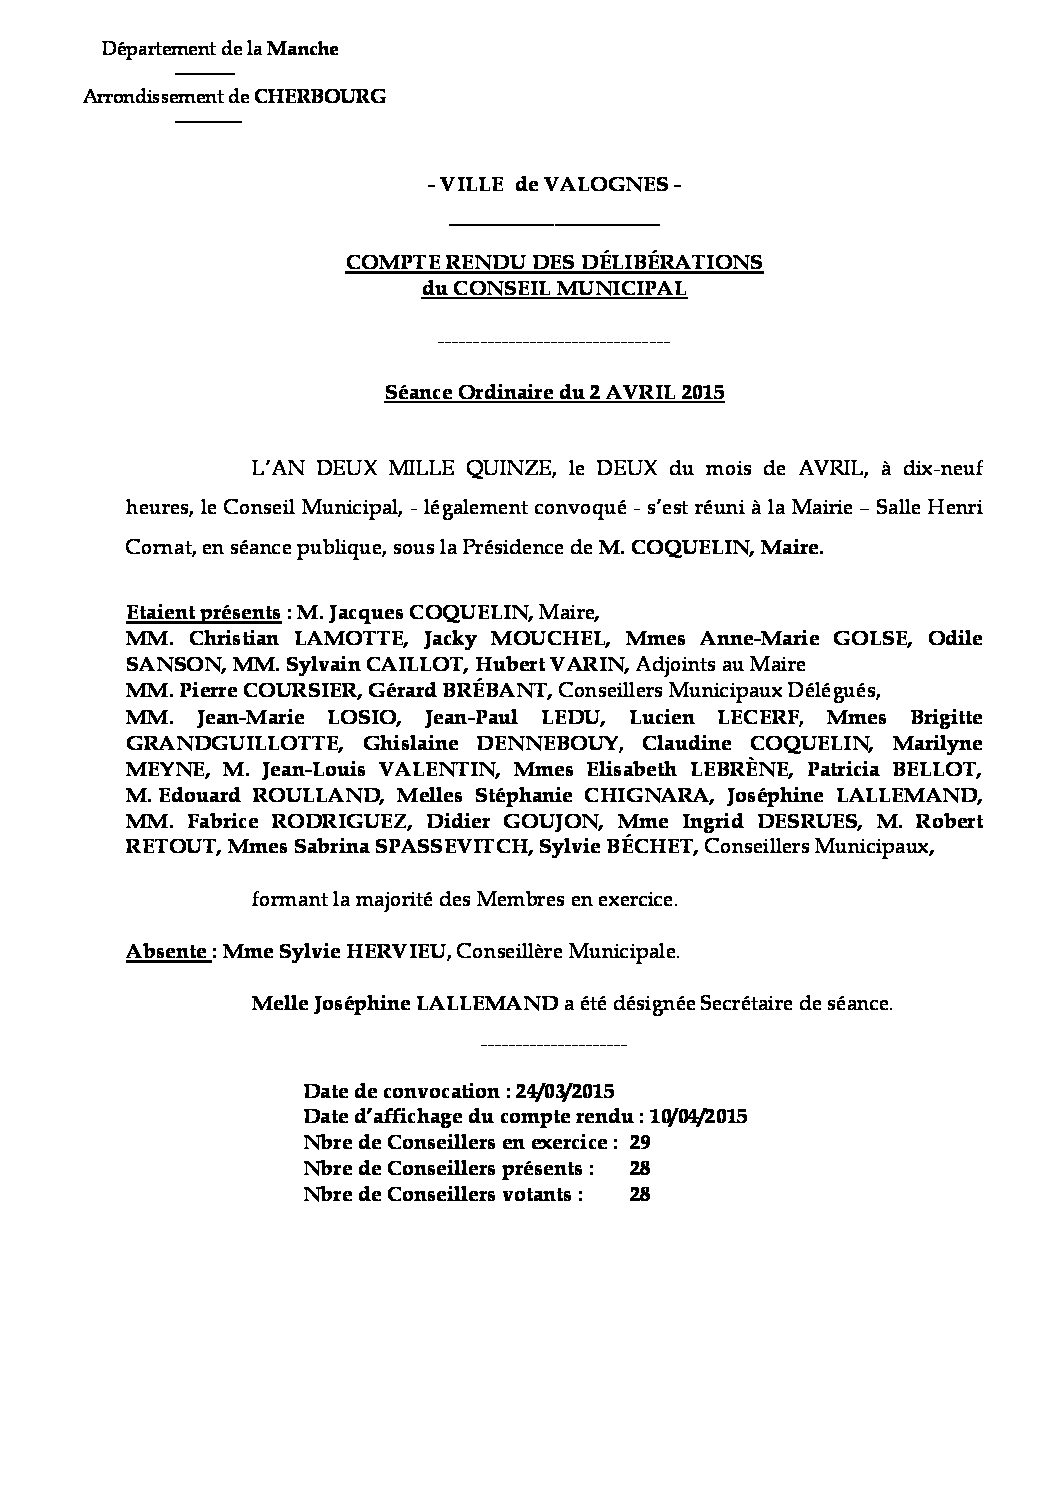 Extrait du registre des délibérations du 02-04-2015 - Compte rendu des questions soumises à délibération lors de la séance du Conseil Municipal du 2 avril 2015.